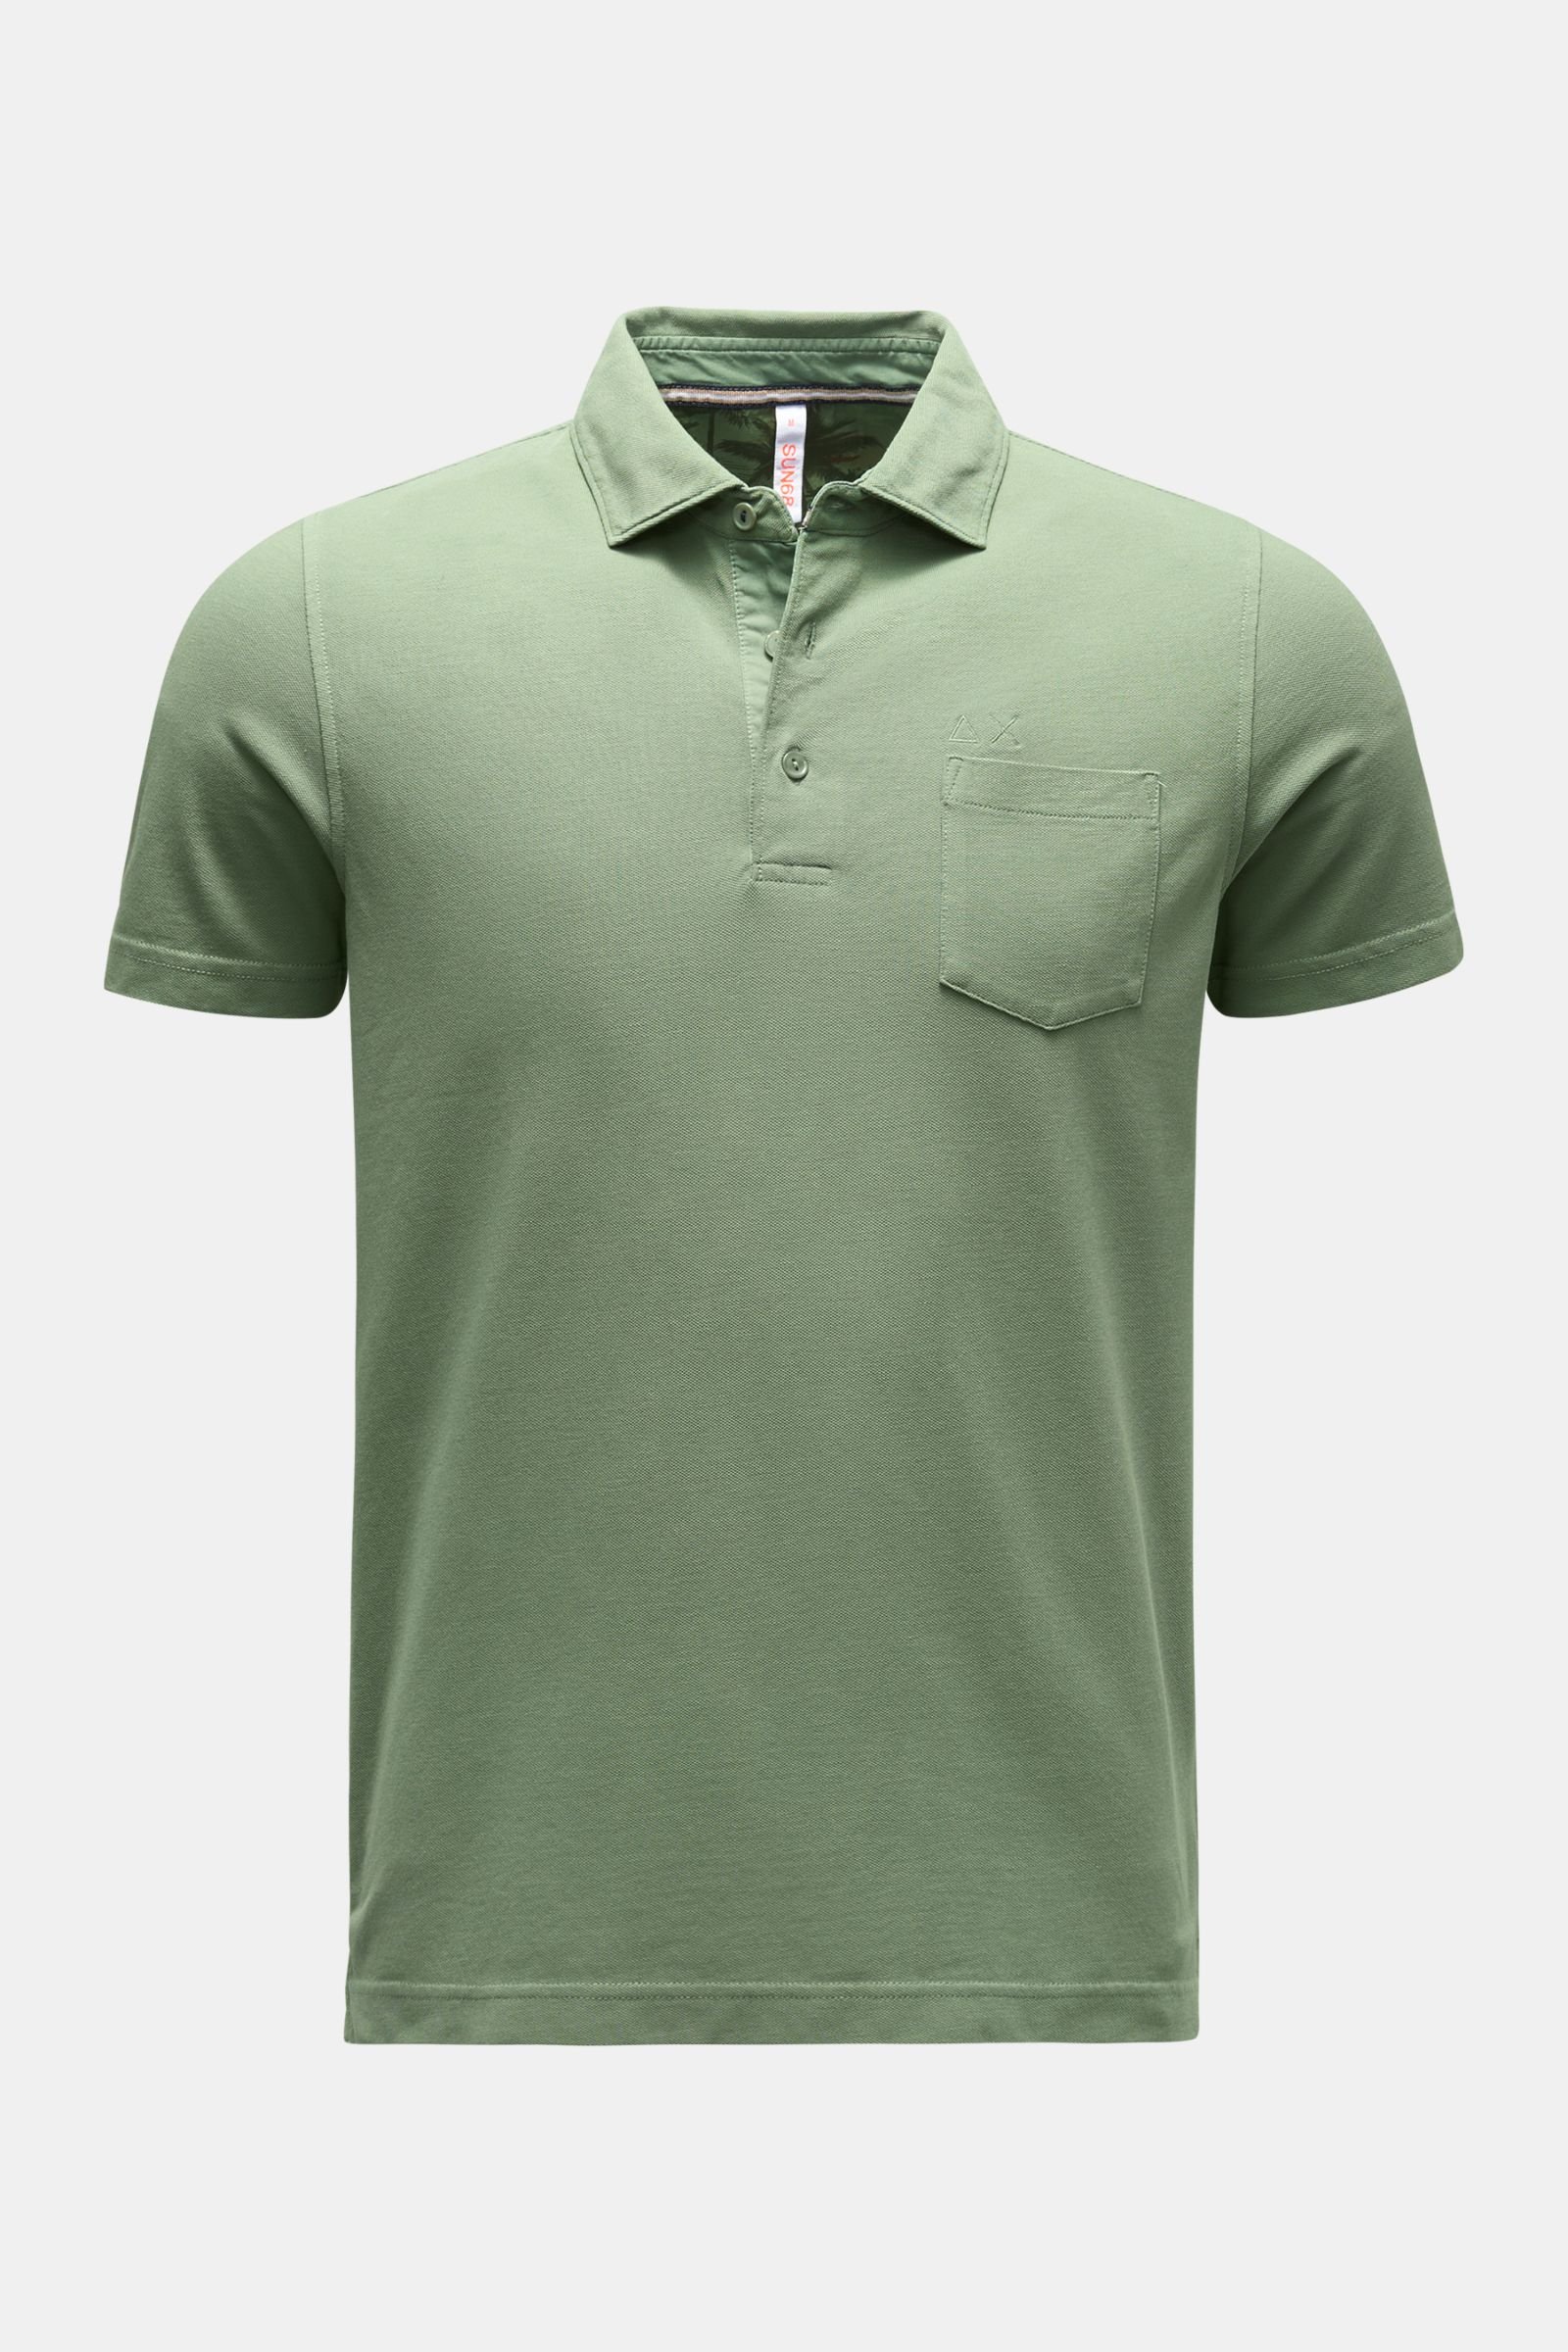 Polo shirt green